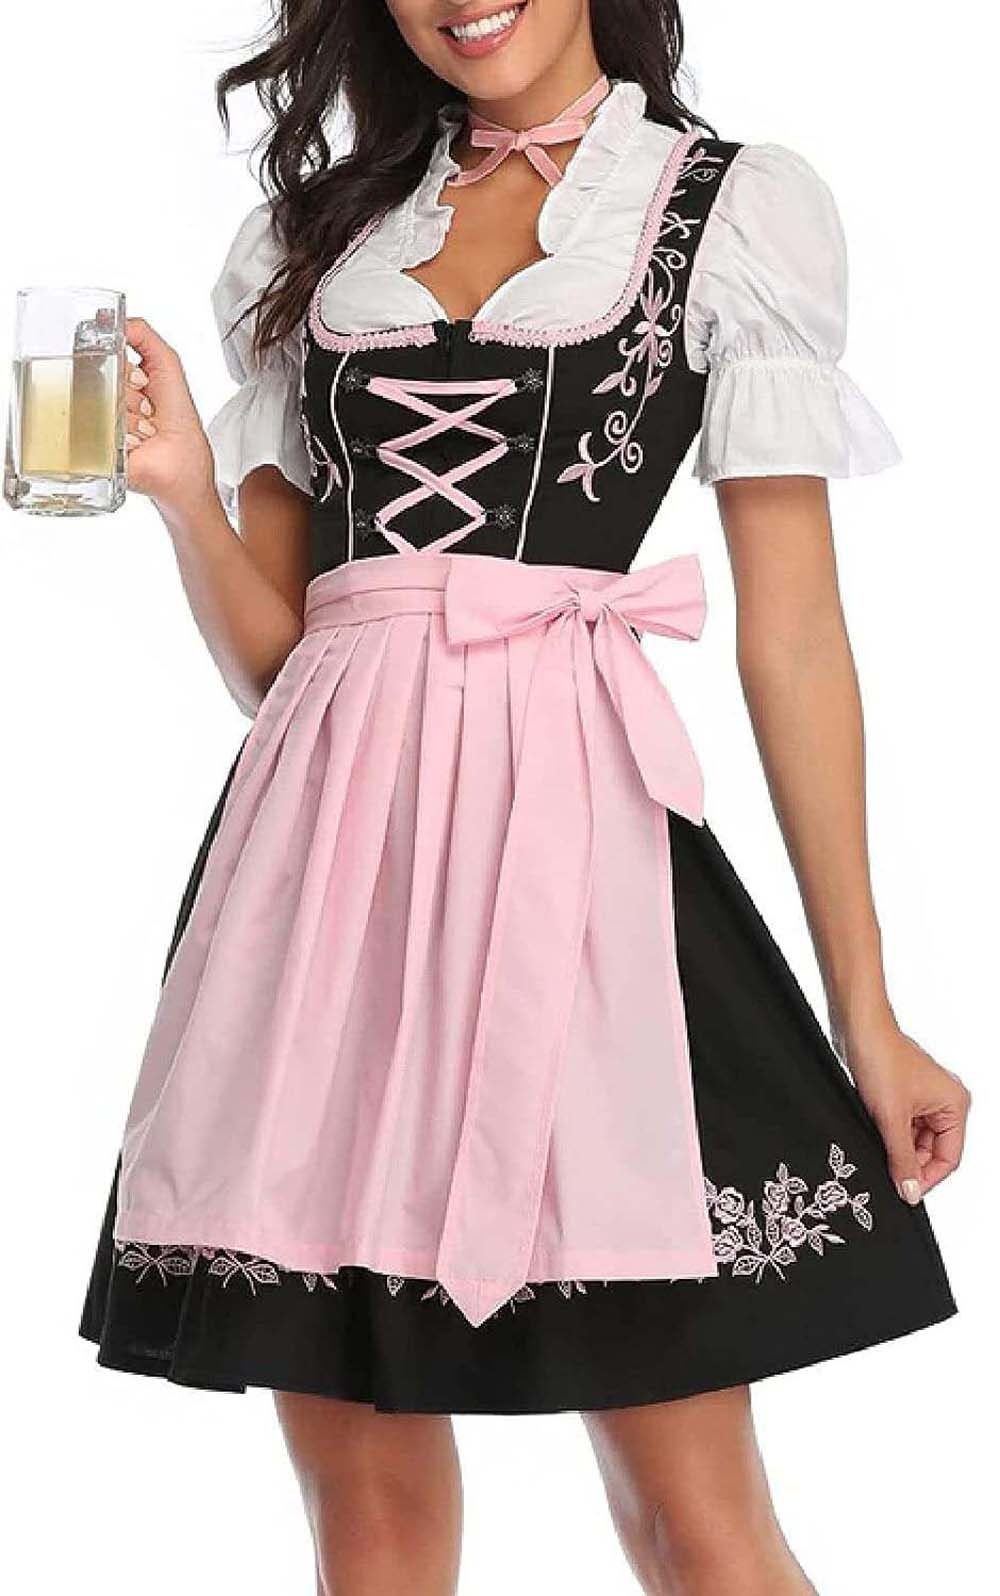 Housruse Dirndl Damen Dirndl Kleid Oktoberfest Outfit Arbeitskleidung  fürTraditionelle